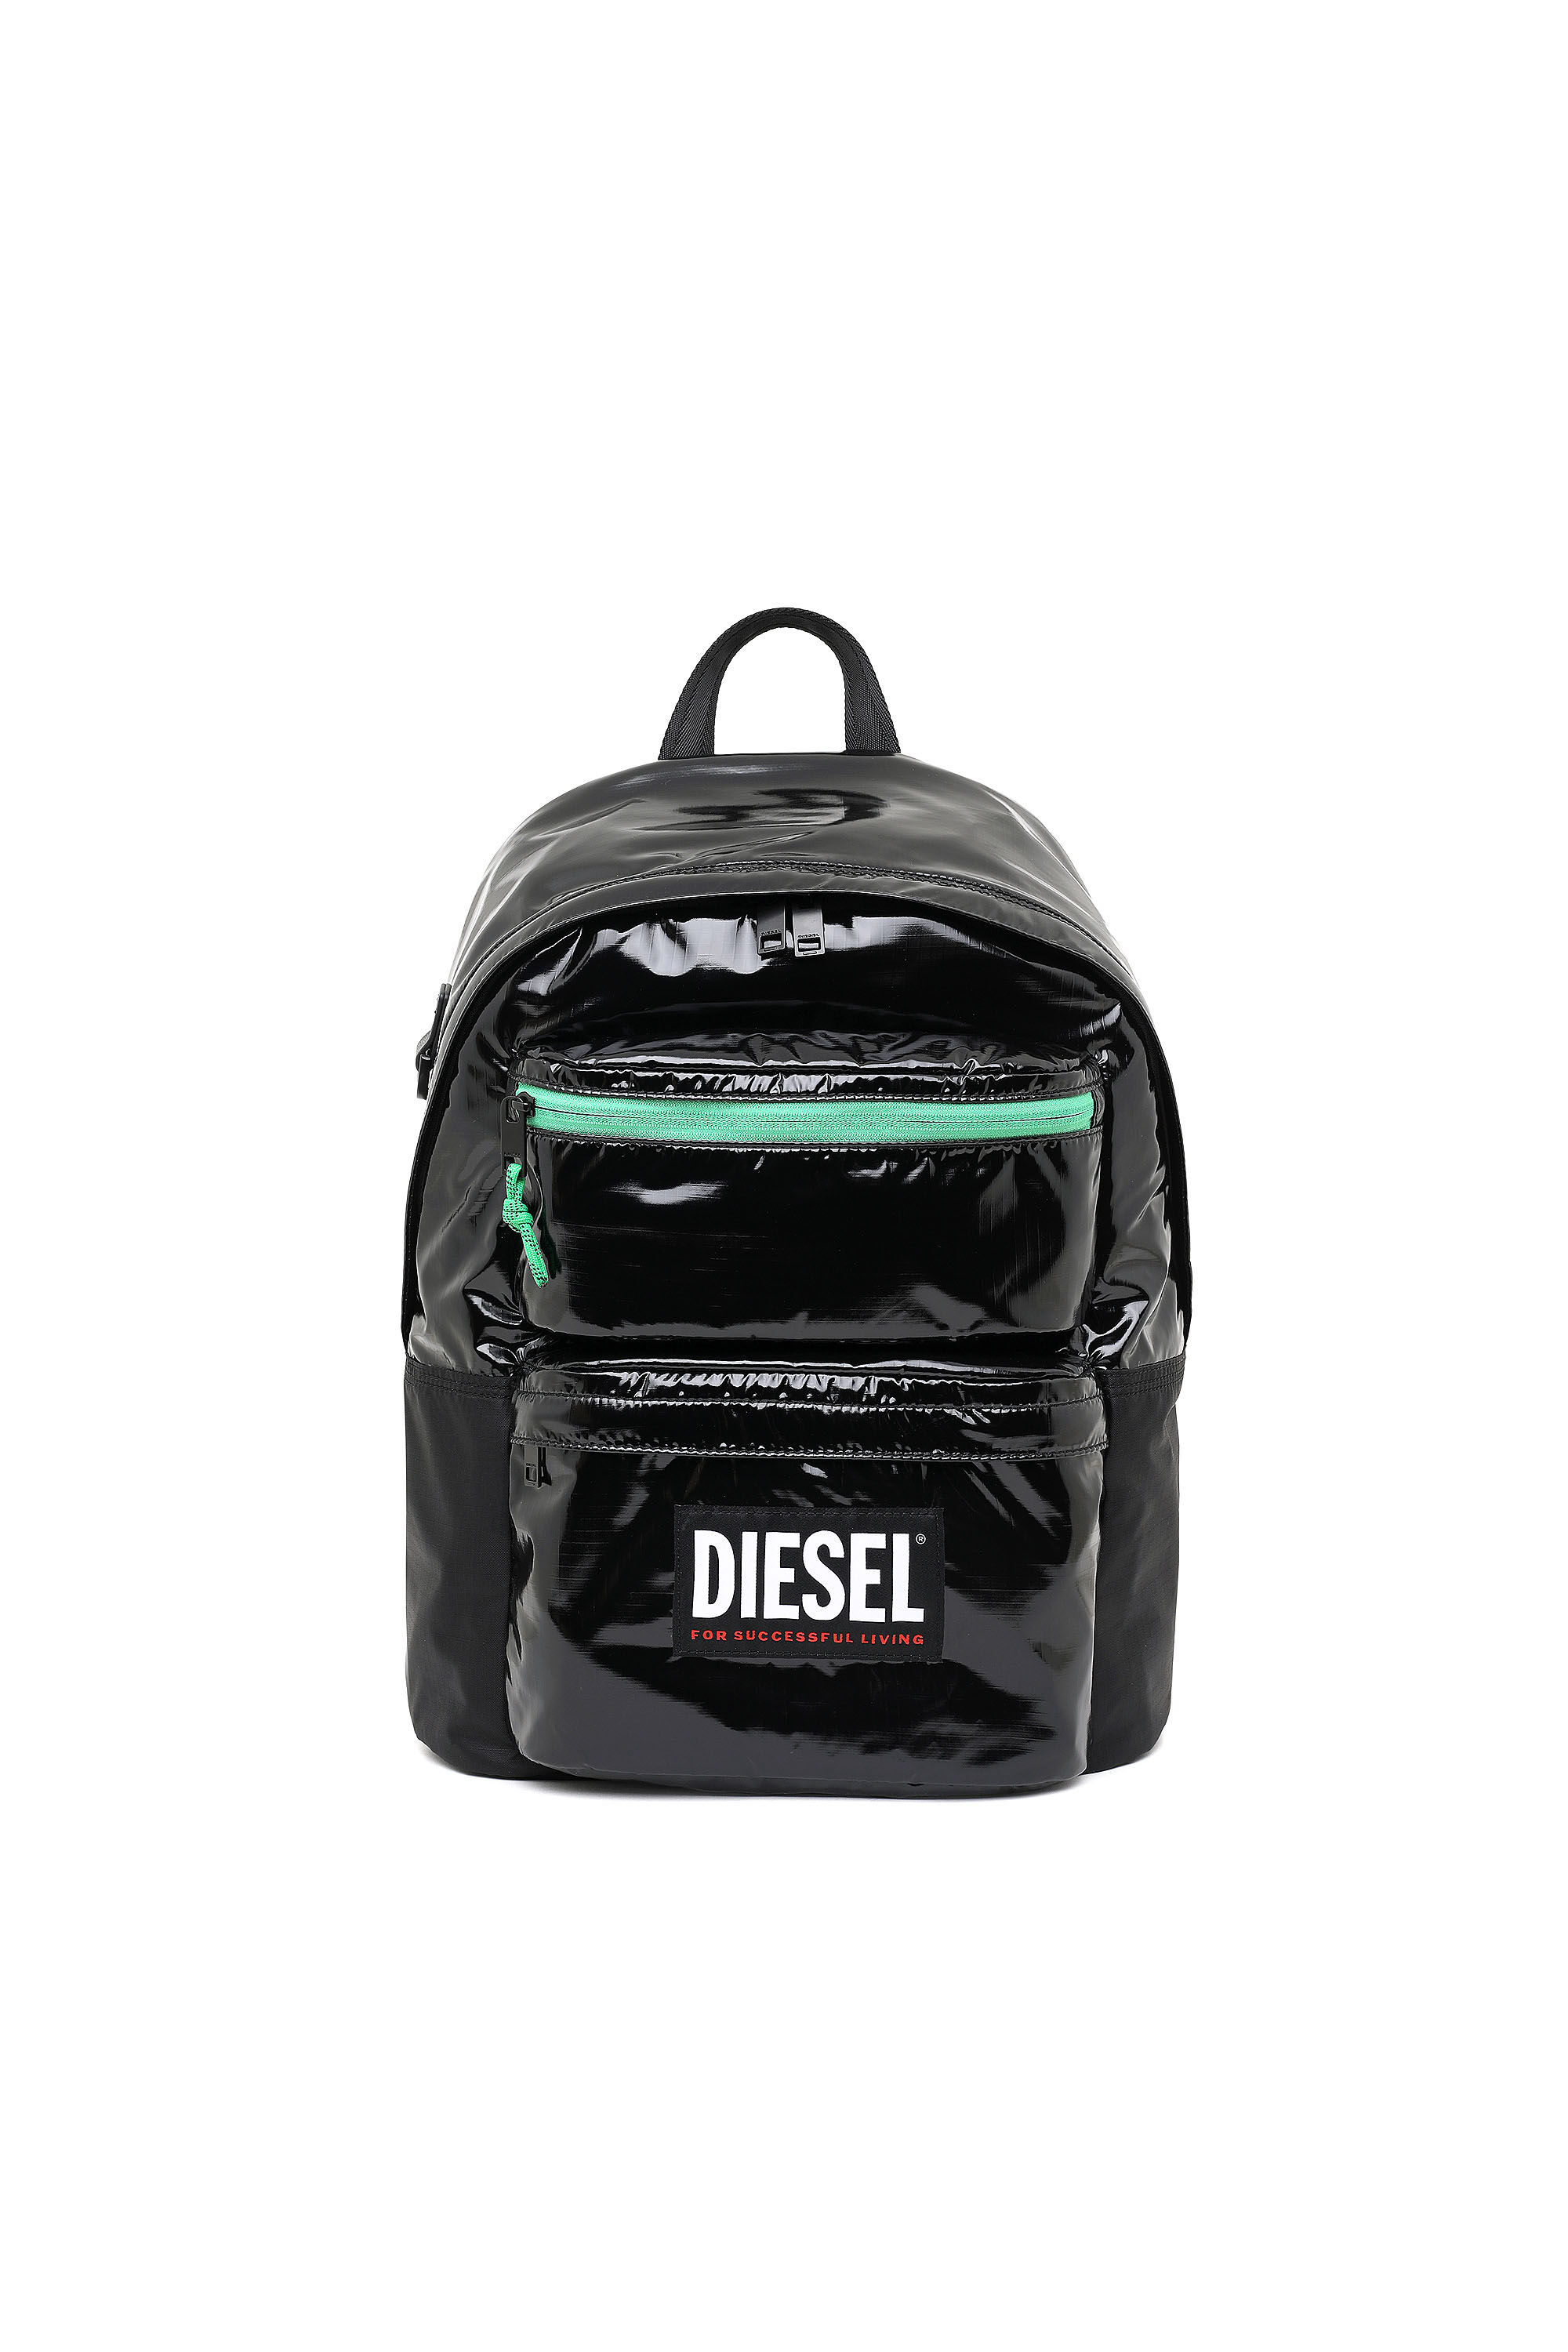 Diesel - RODYO PAT, Black/Green - Image 2